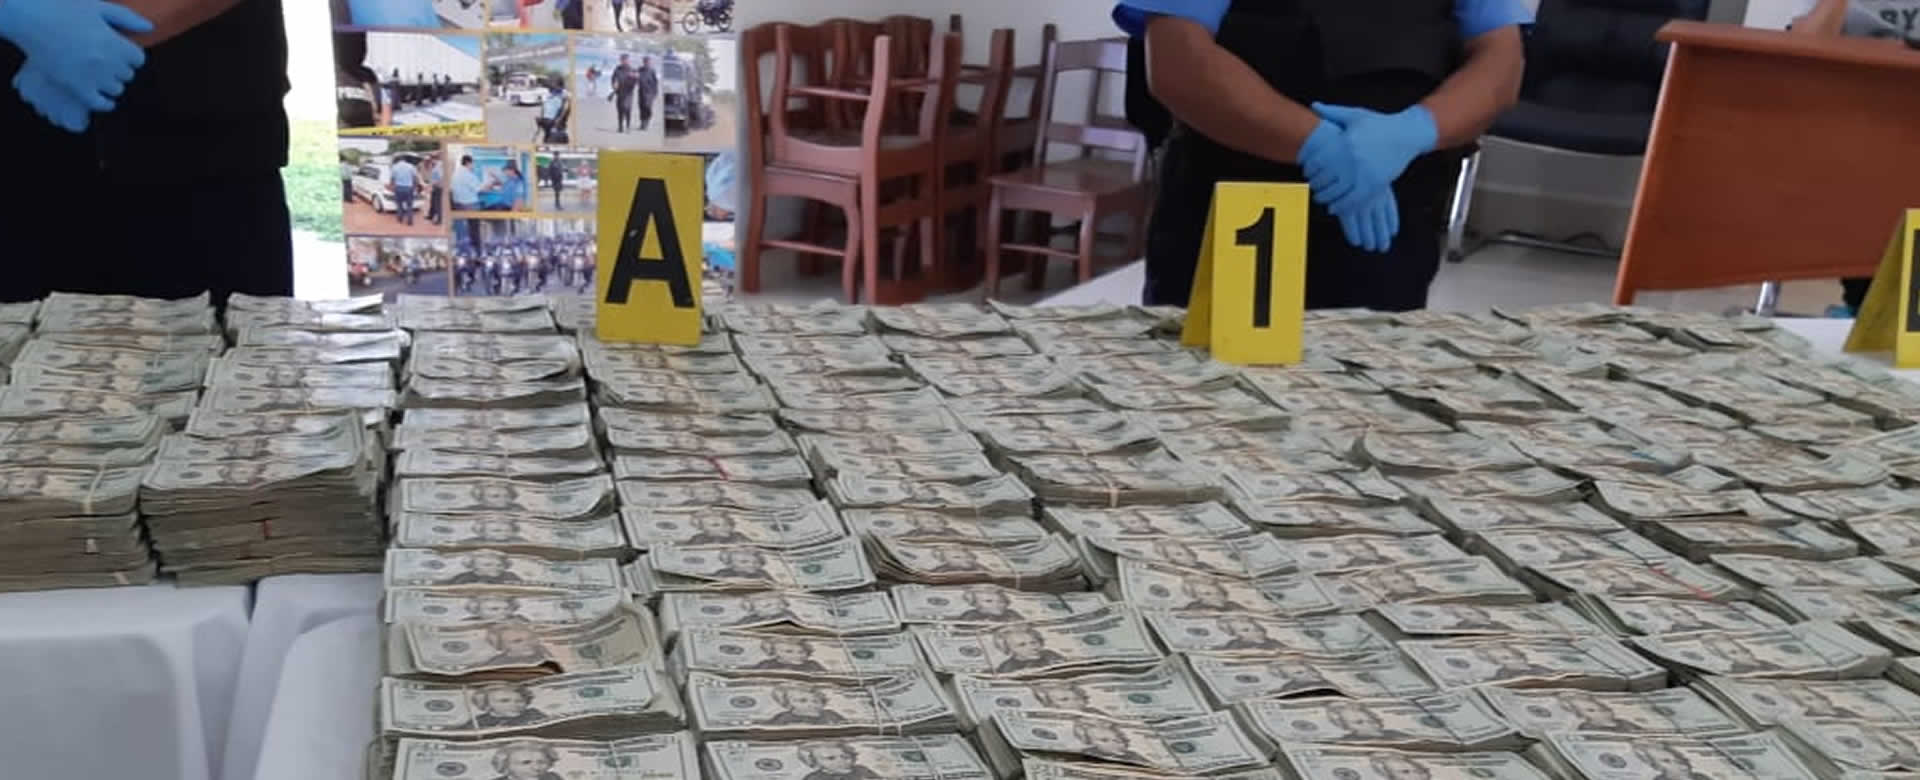 Policía Nacional incauta más de 2 millones de dólares en Chinandega